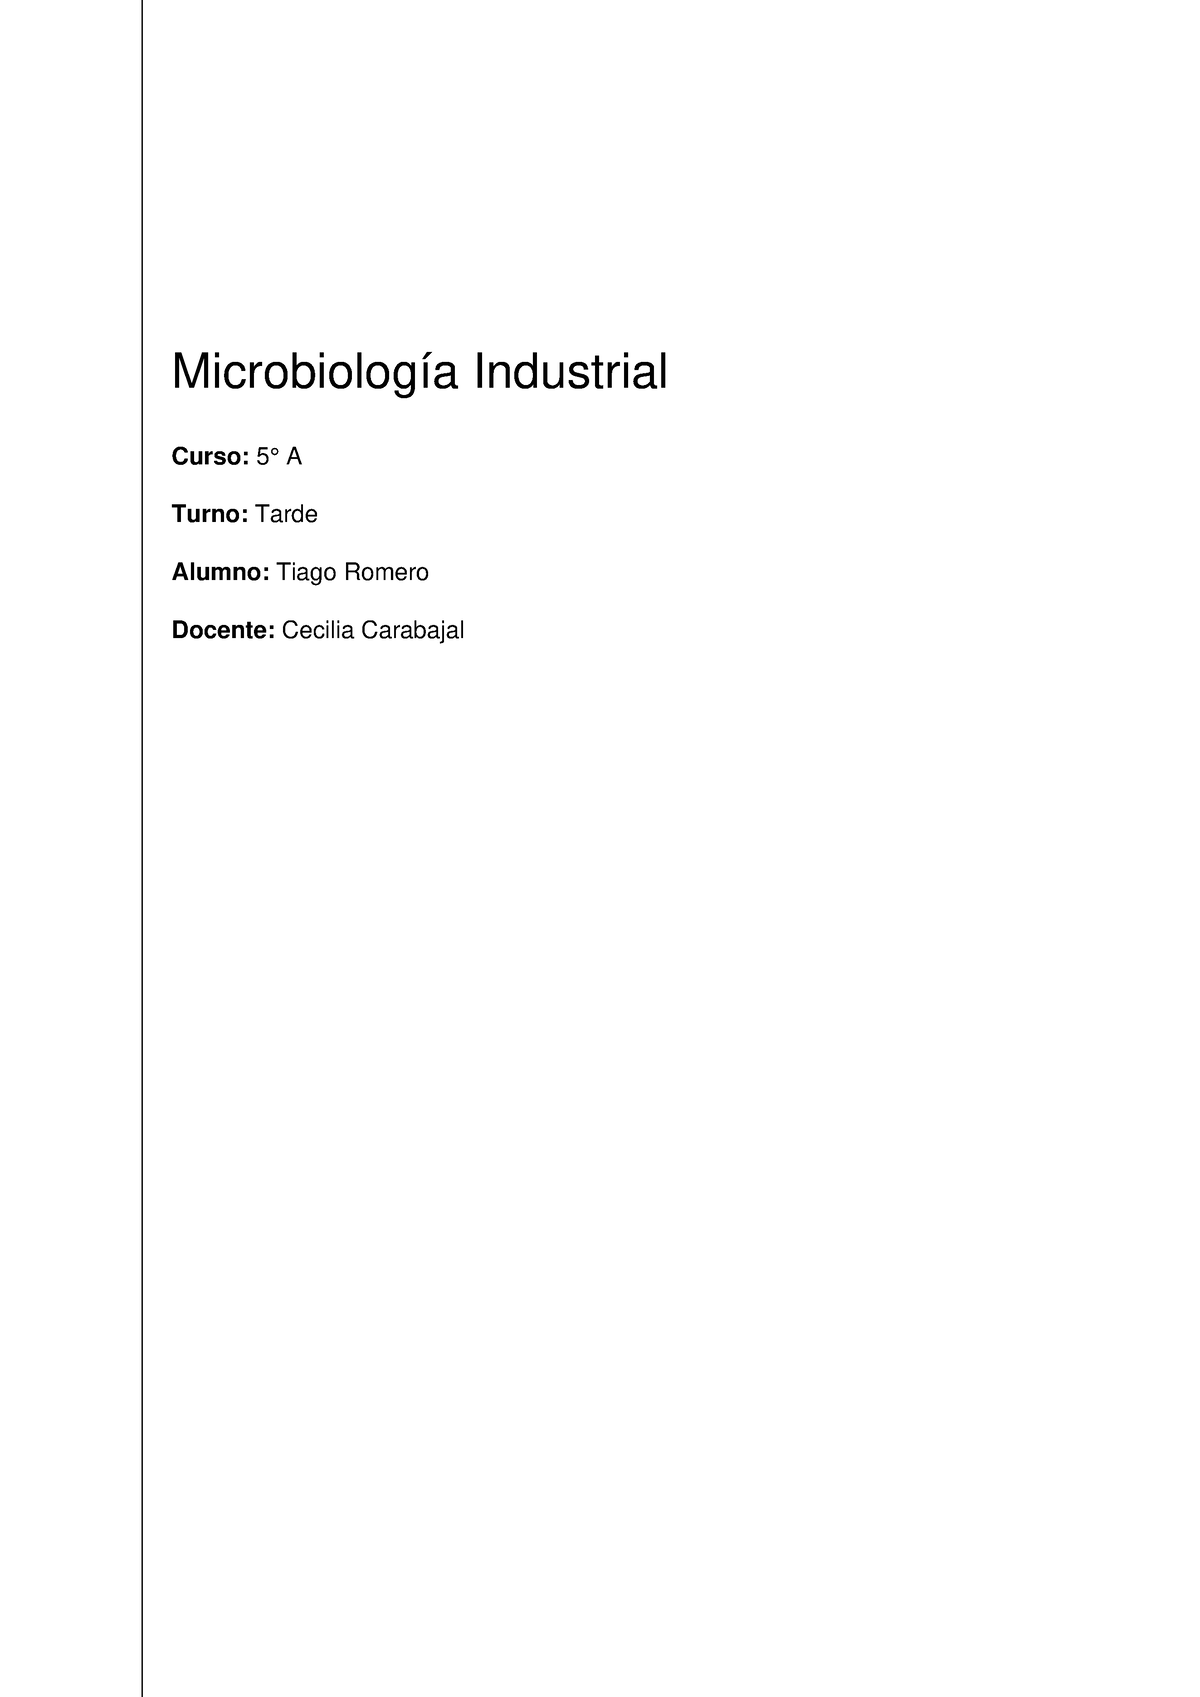 Microbiología Industrial - Microbiología Industrial Curso: 5° A Turno ...